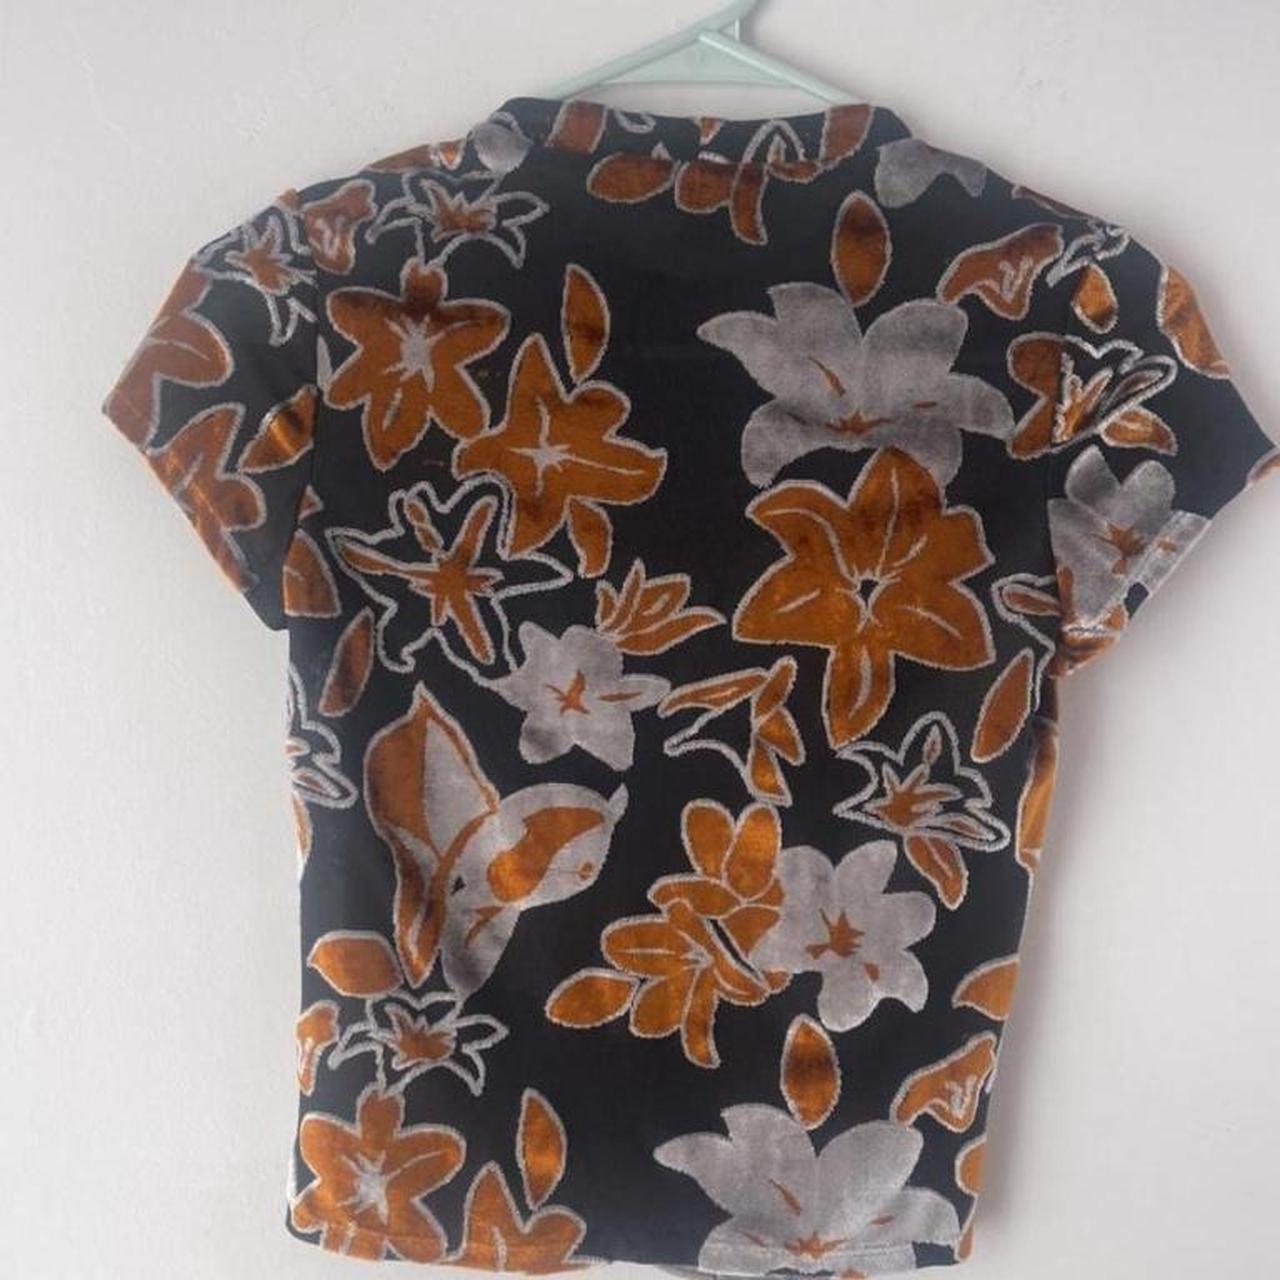 Eckhaus Latta Women's Black and Orange T-shirt (3)